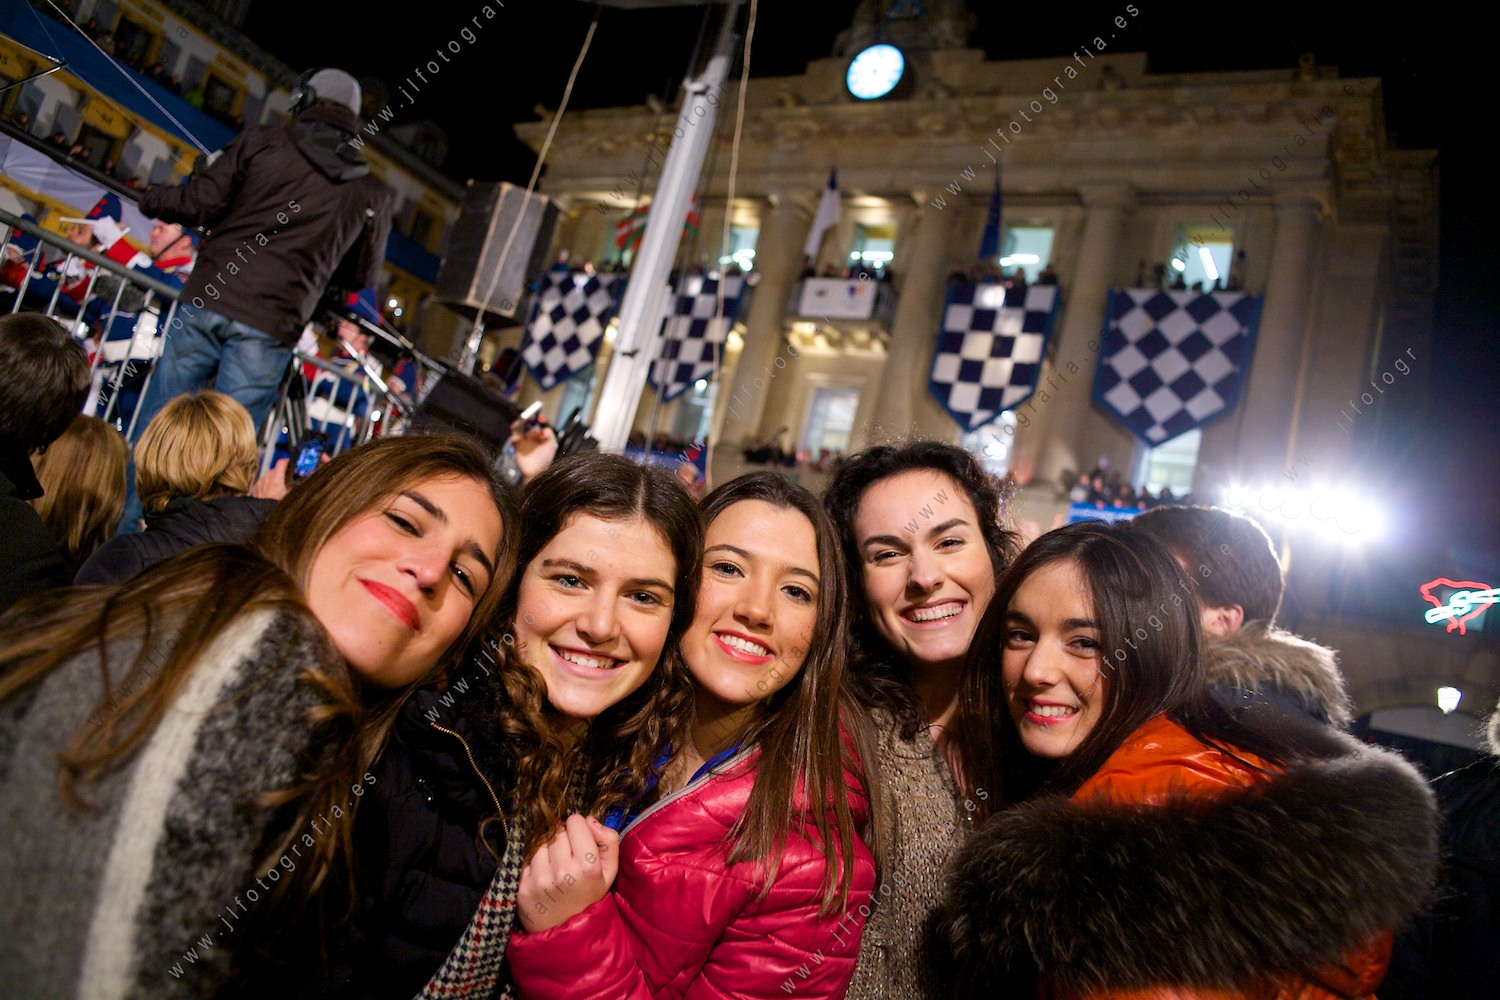 Un grupo de jovencitas donostiarras posando felicies en la fiesta de la tamborrada de San Sebastián.